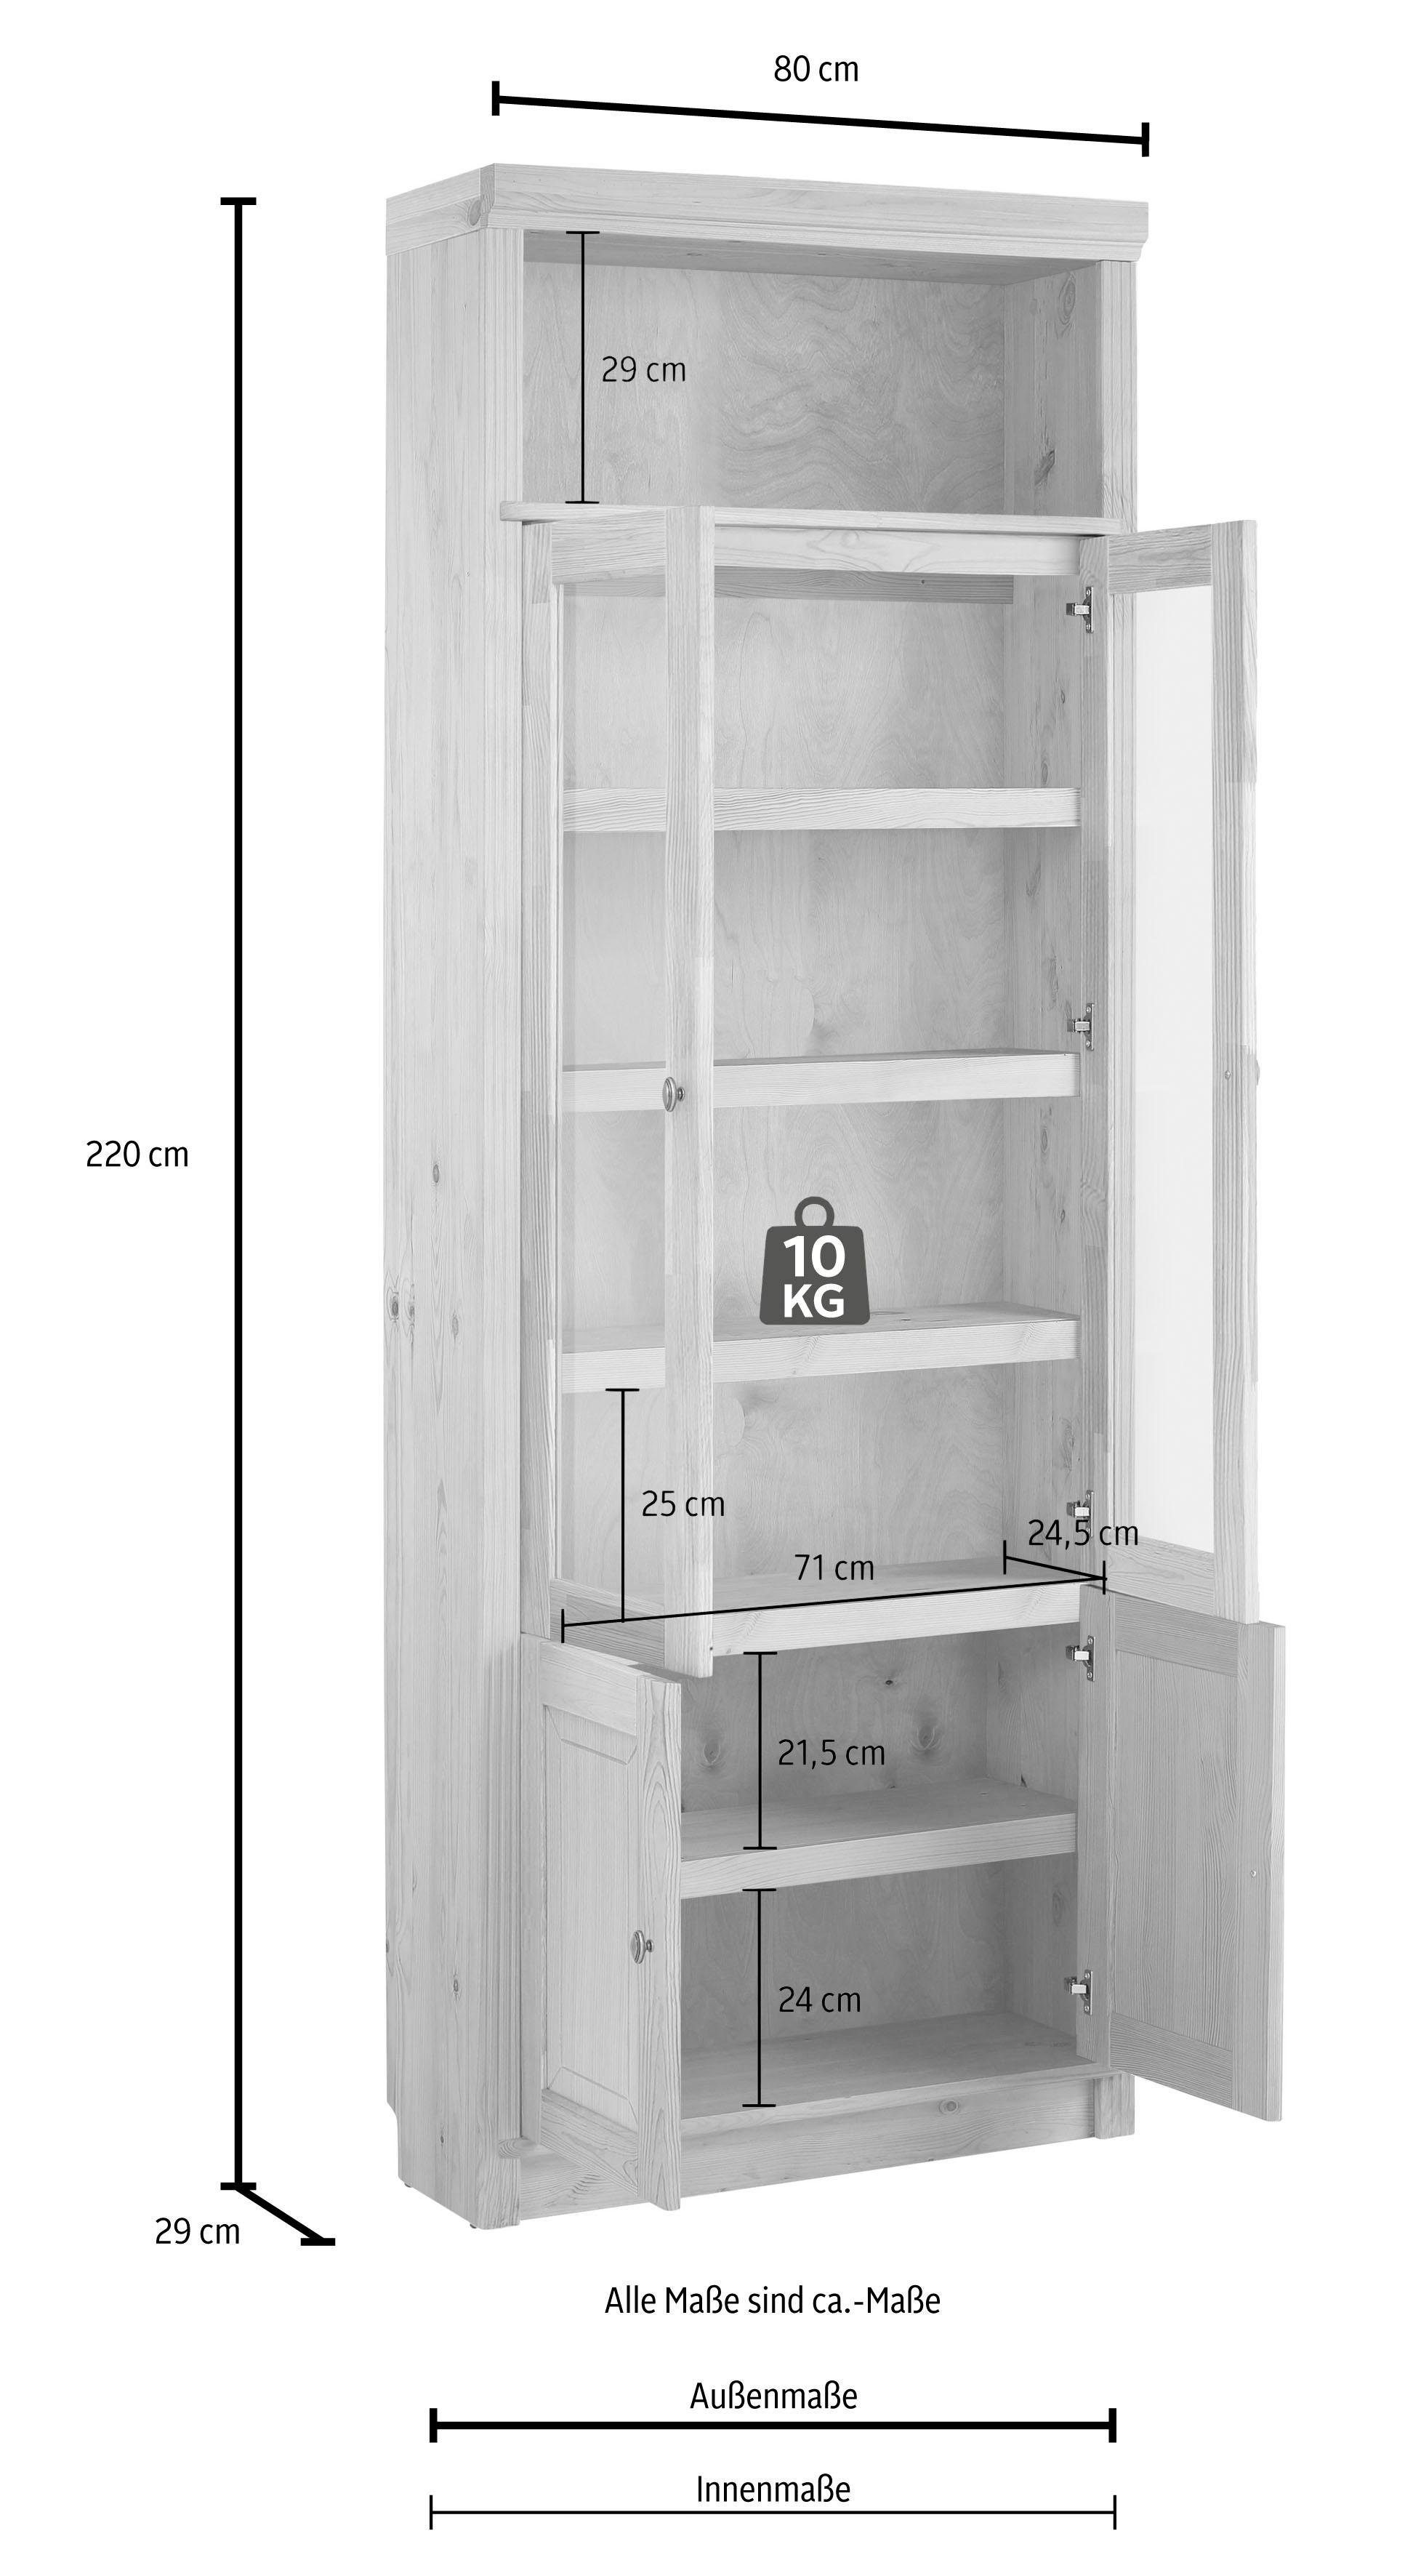 Home affaire Bücherregal Soeren, massiver mit gelaugt/geölt 29 cm, Kiefer, Türen 2 Höhen, Tiefe Einsatz in Klarglas